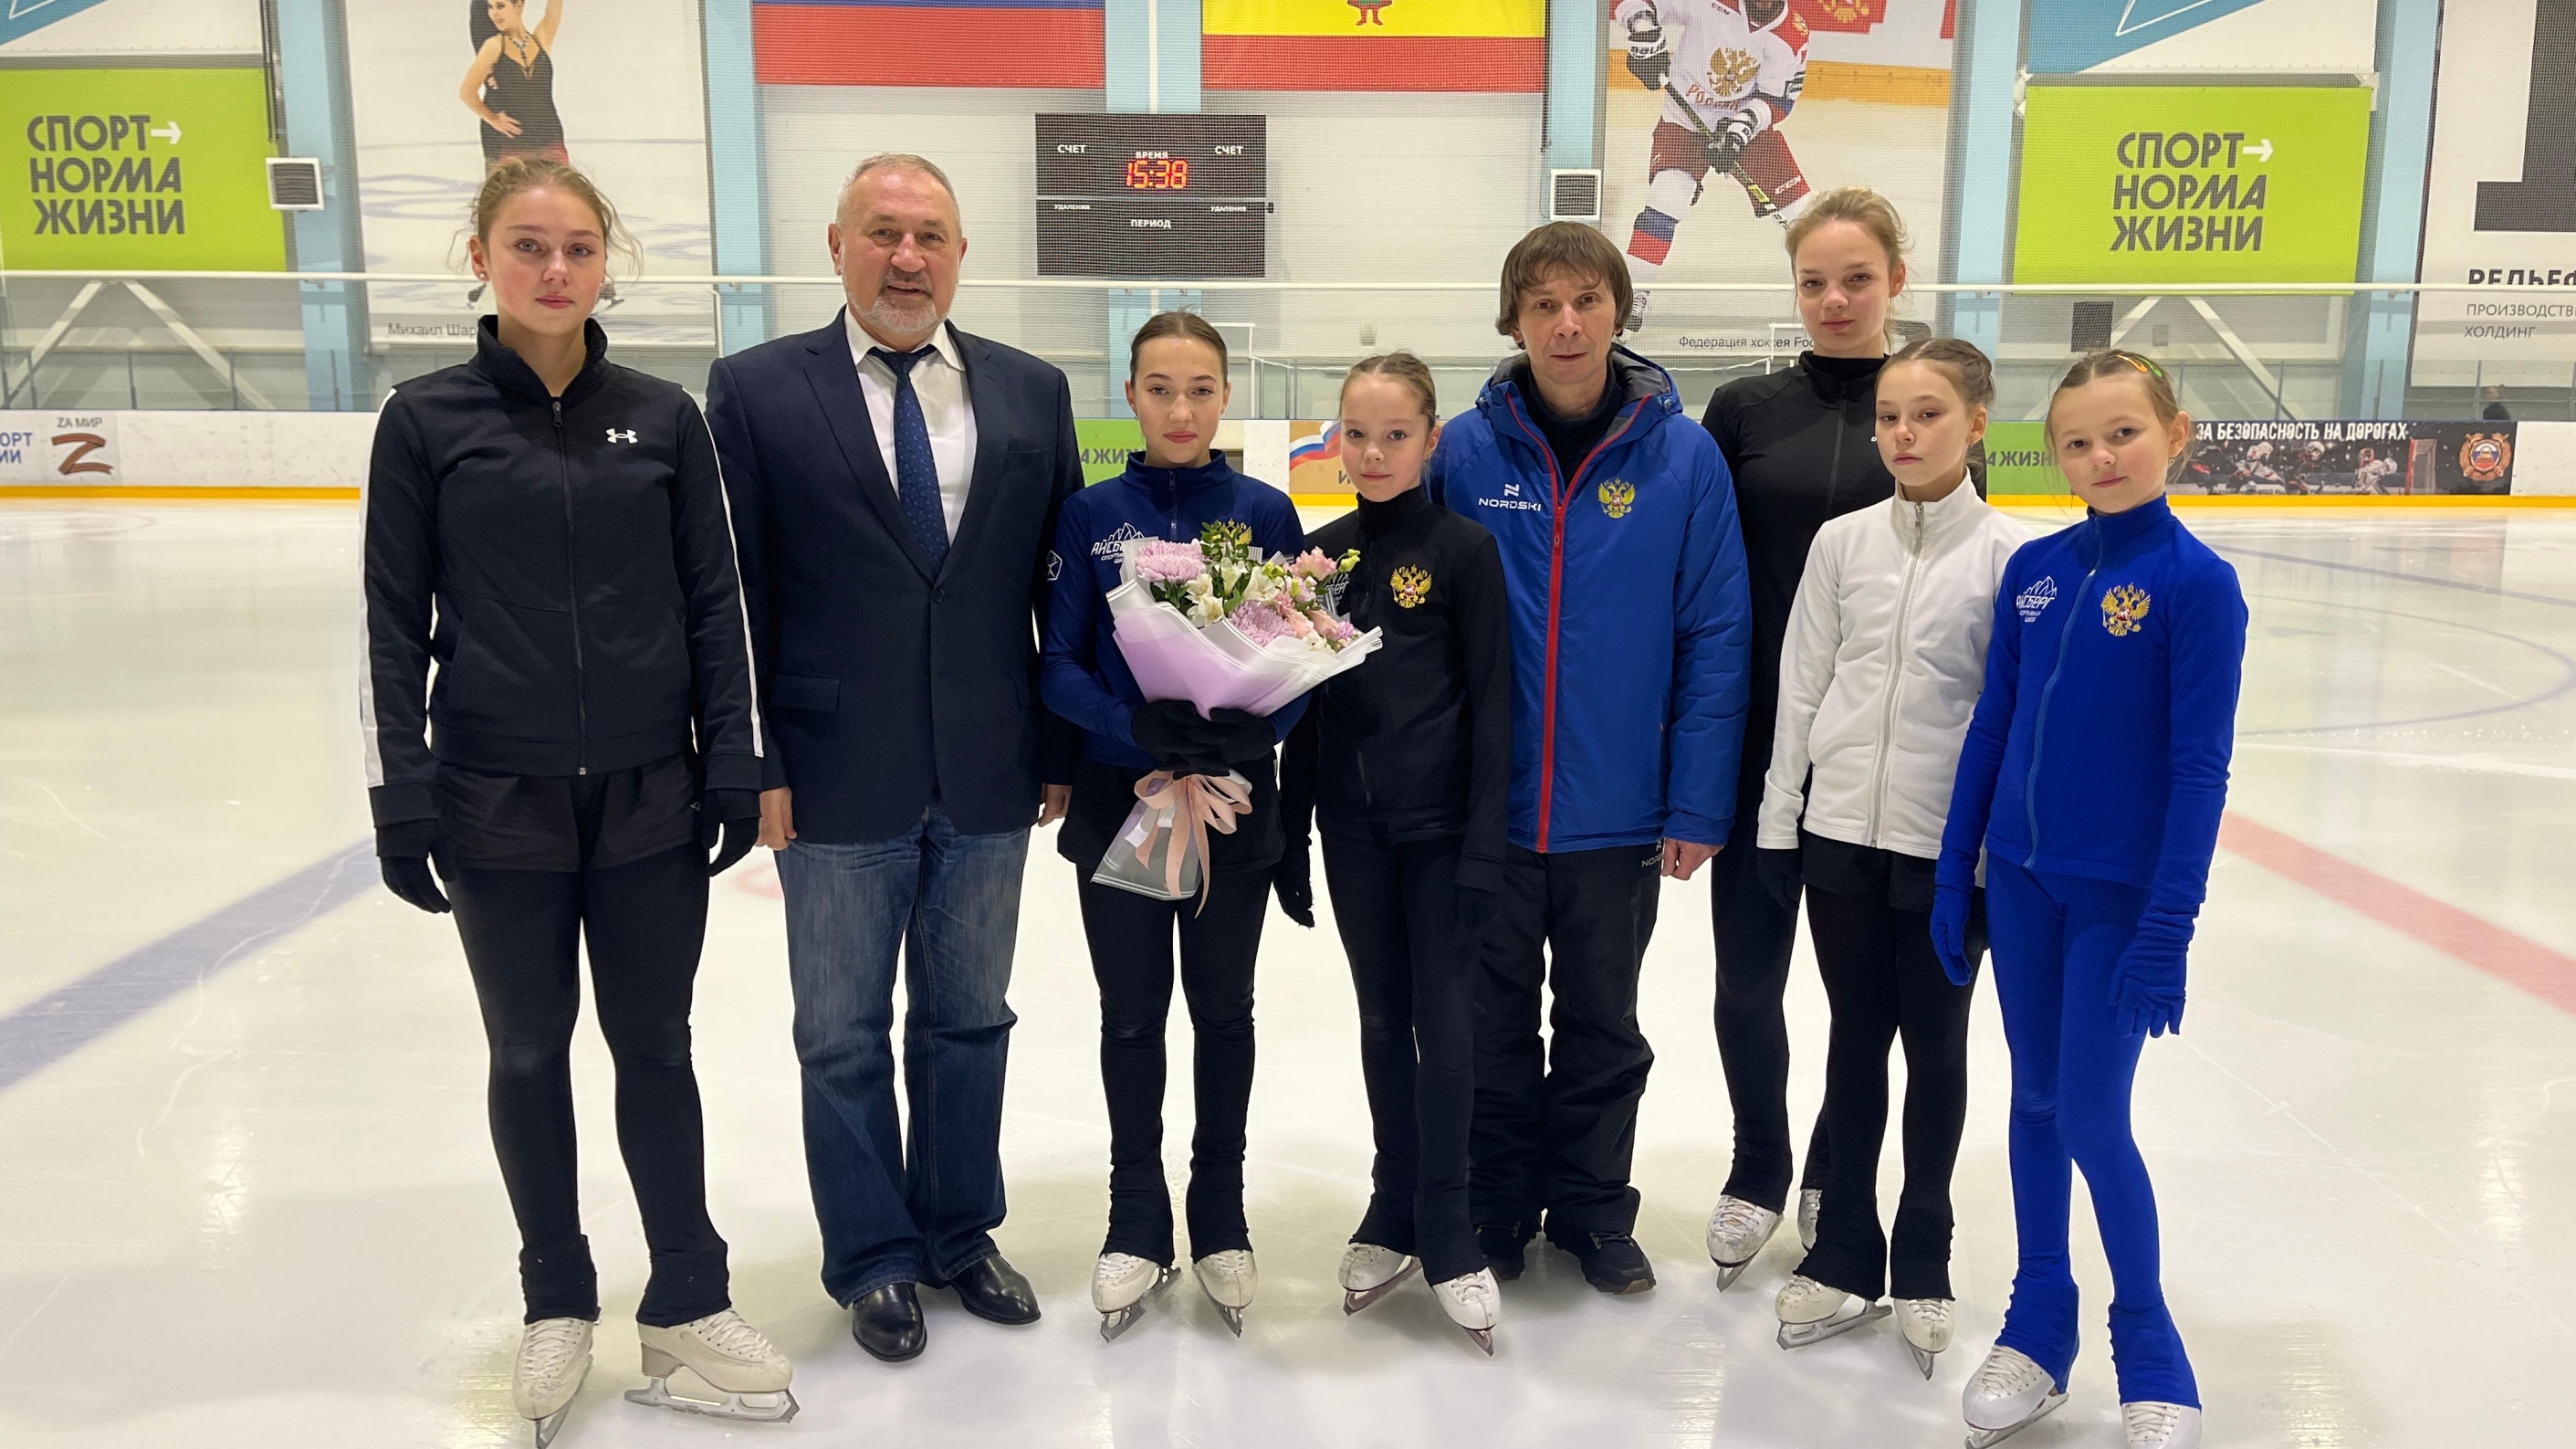 Впервые в истории рязанского спорта присвоено спортивное звание «Мастер спорта России» по фигурному катанию на коньках!